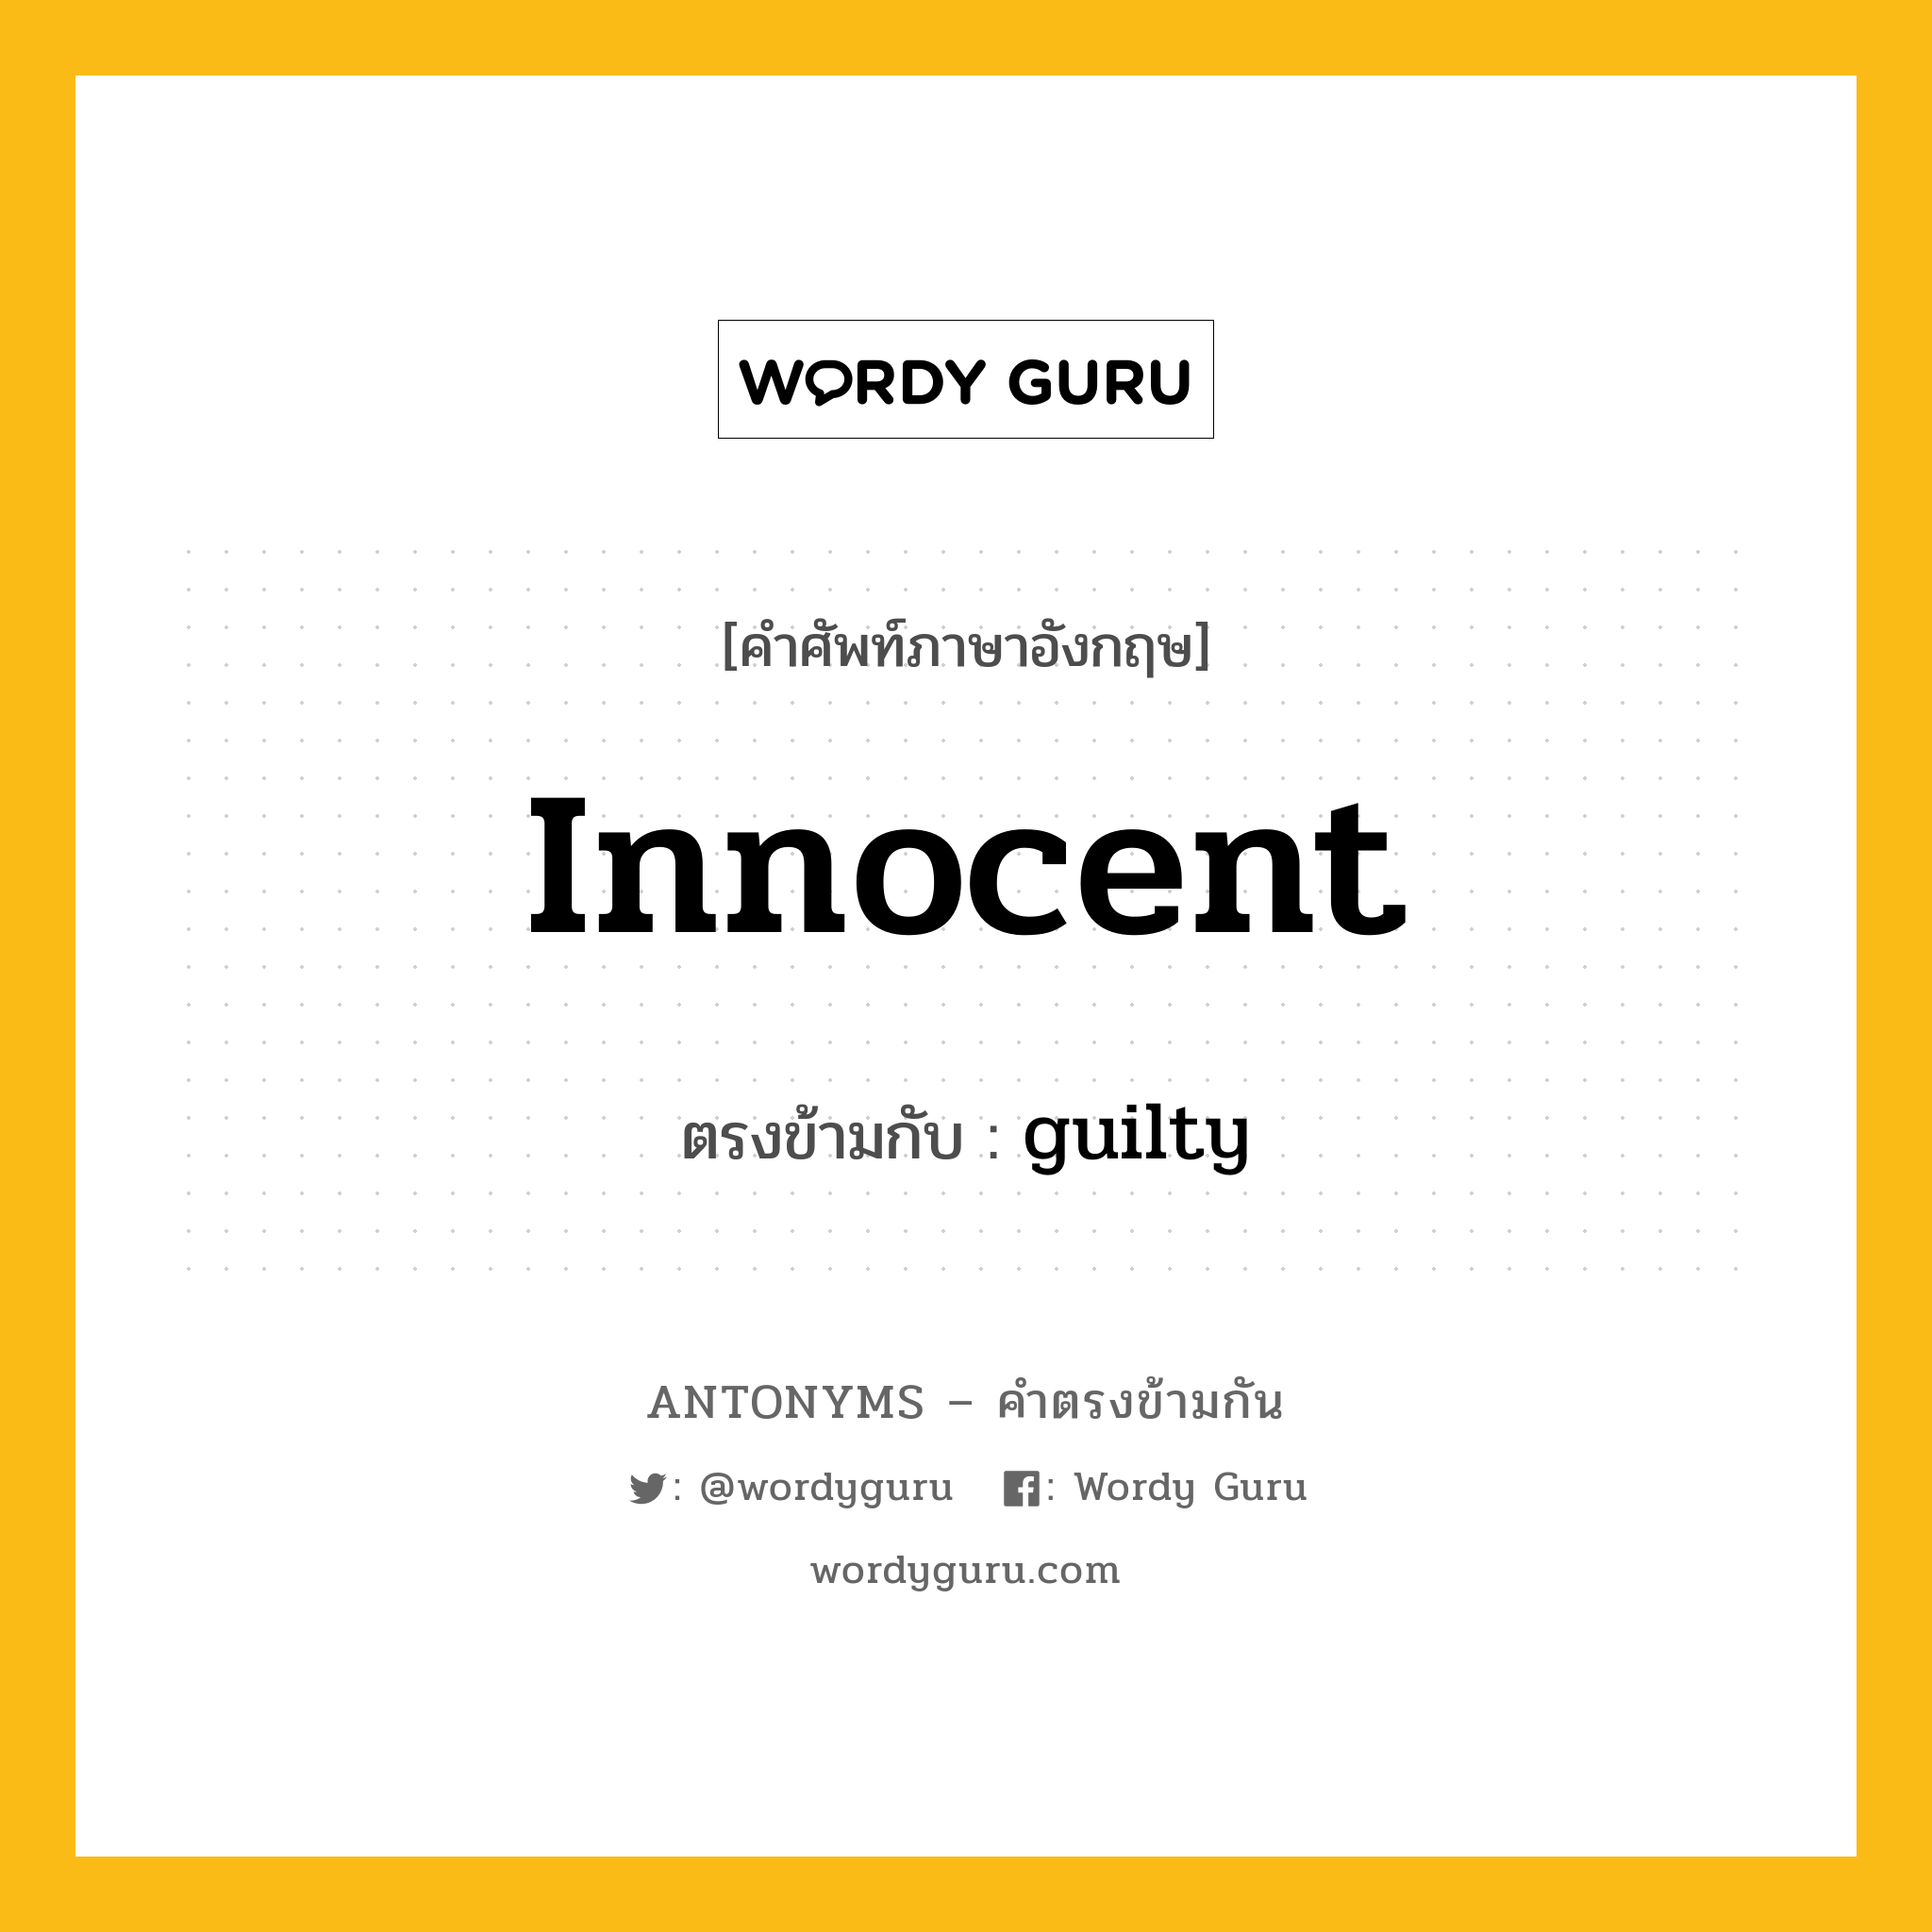 innocent เป็นคำตรงข้ามกับคำไหนบ้าง?, คำศัพท์ภาษาอังกฤษ innocent ตรงข้ามกับ guilty หมวด guilty